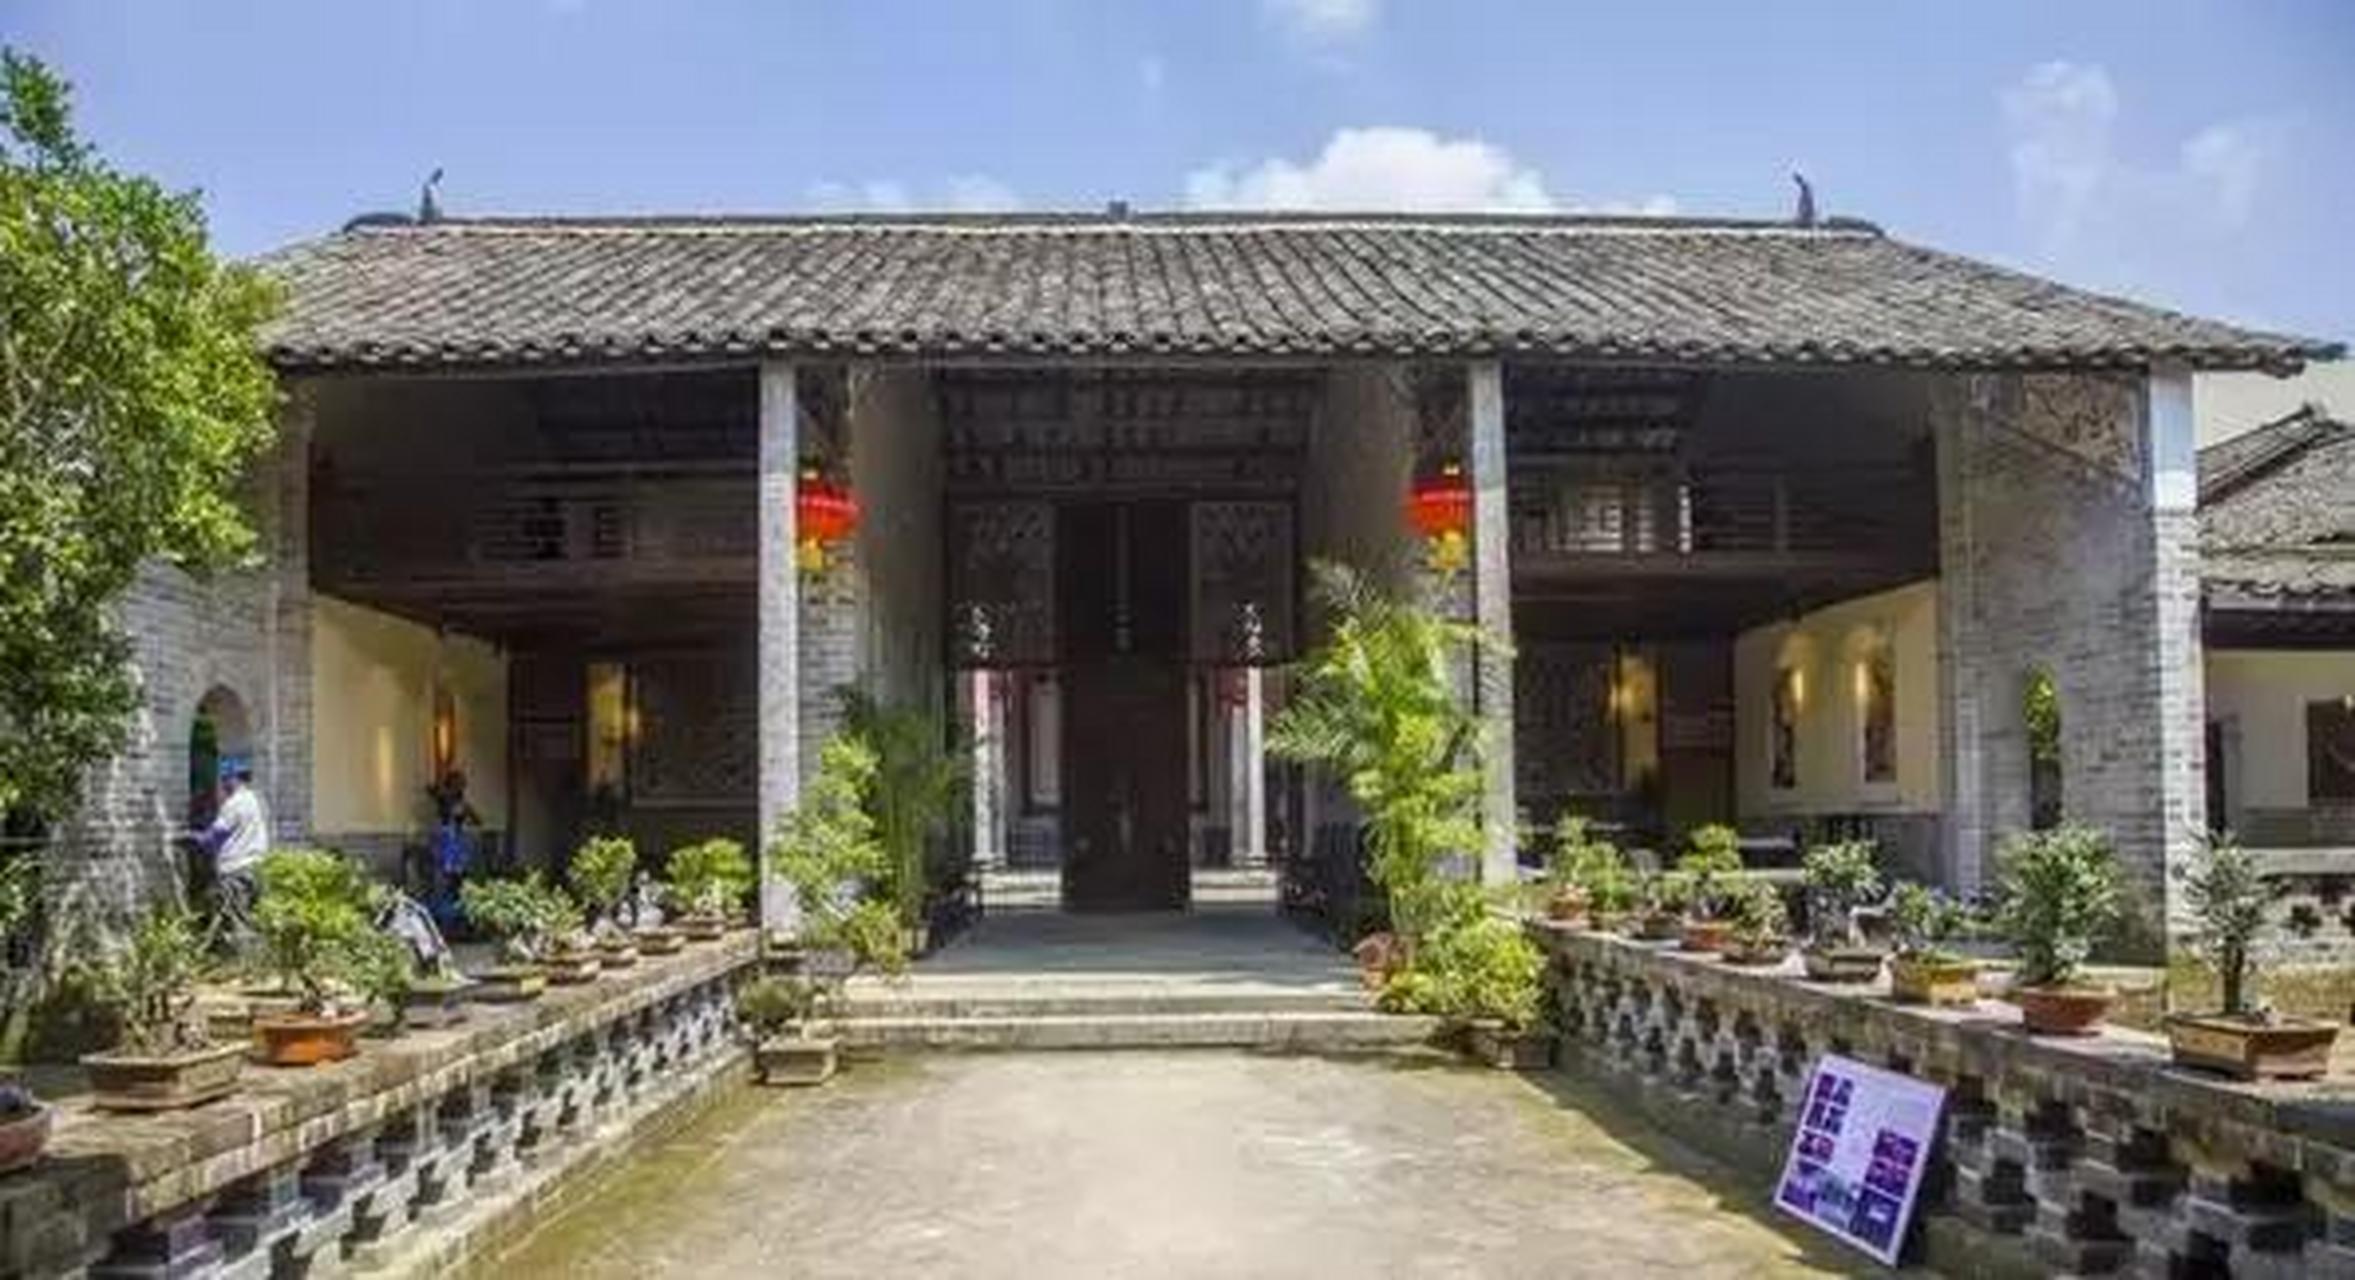 2015年4月,平马村入选第一批广西传统村落名录